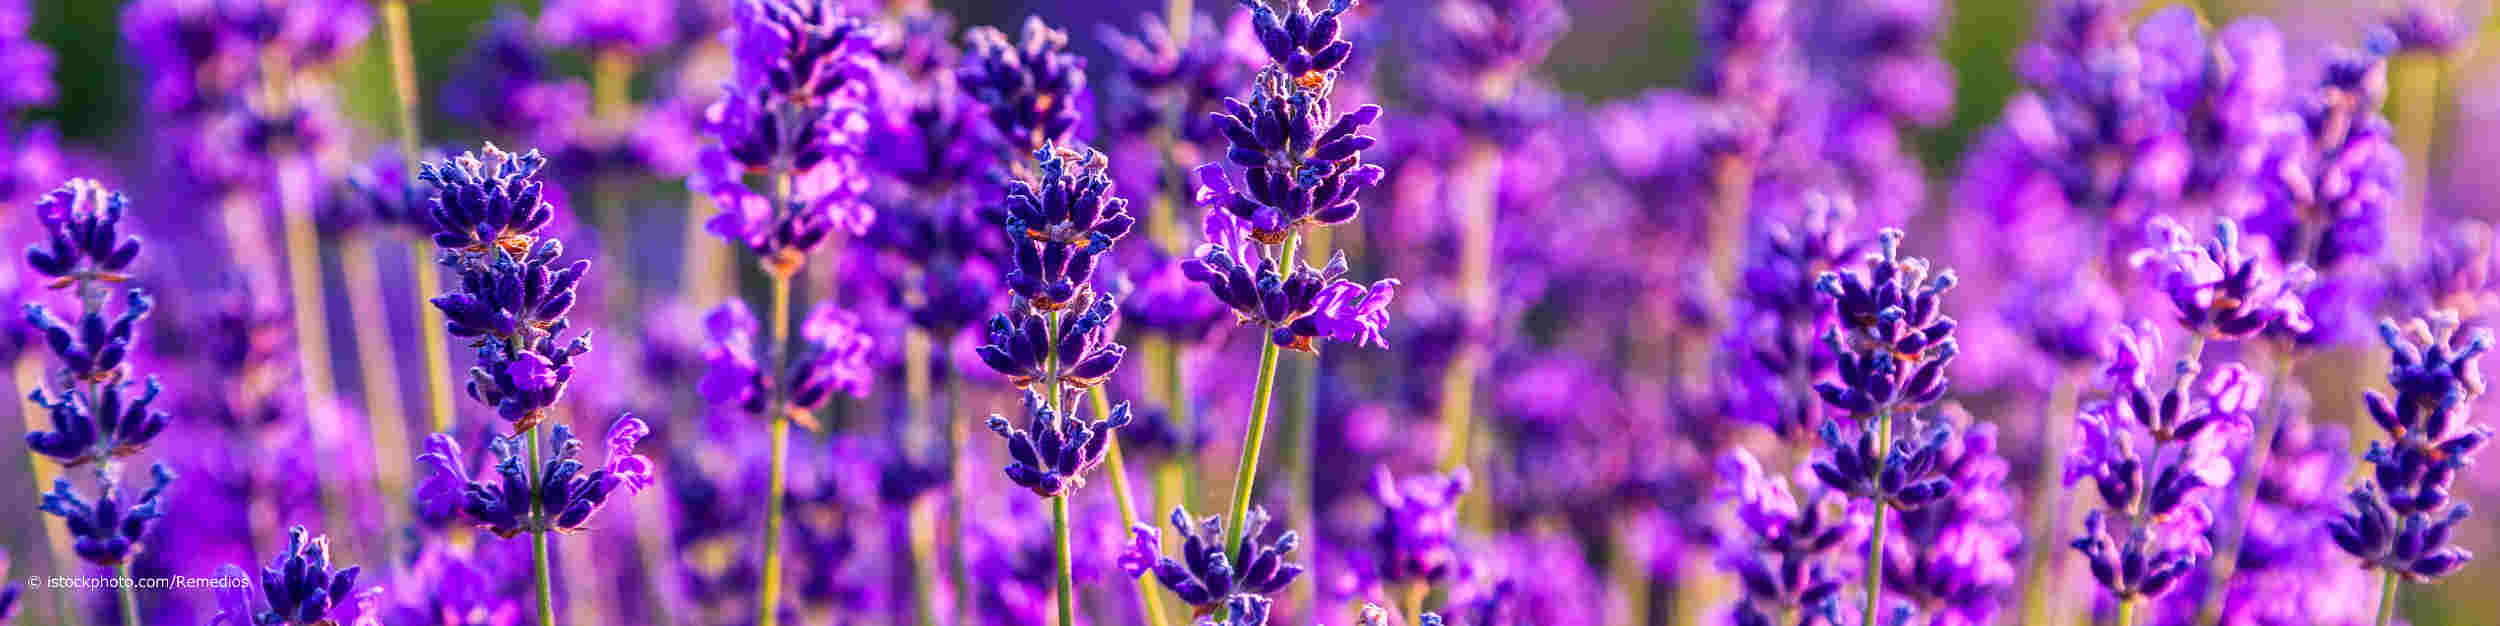 Der Echte Lavendel, lateinisch Lavandula angustifolia, ist die Arzneipflanze 2020 